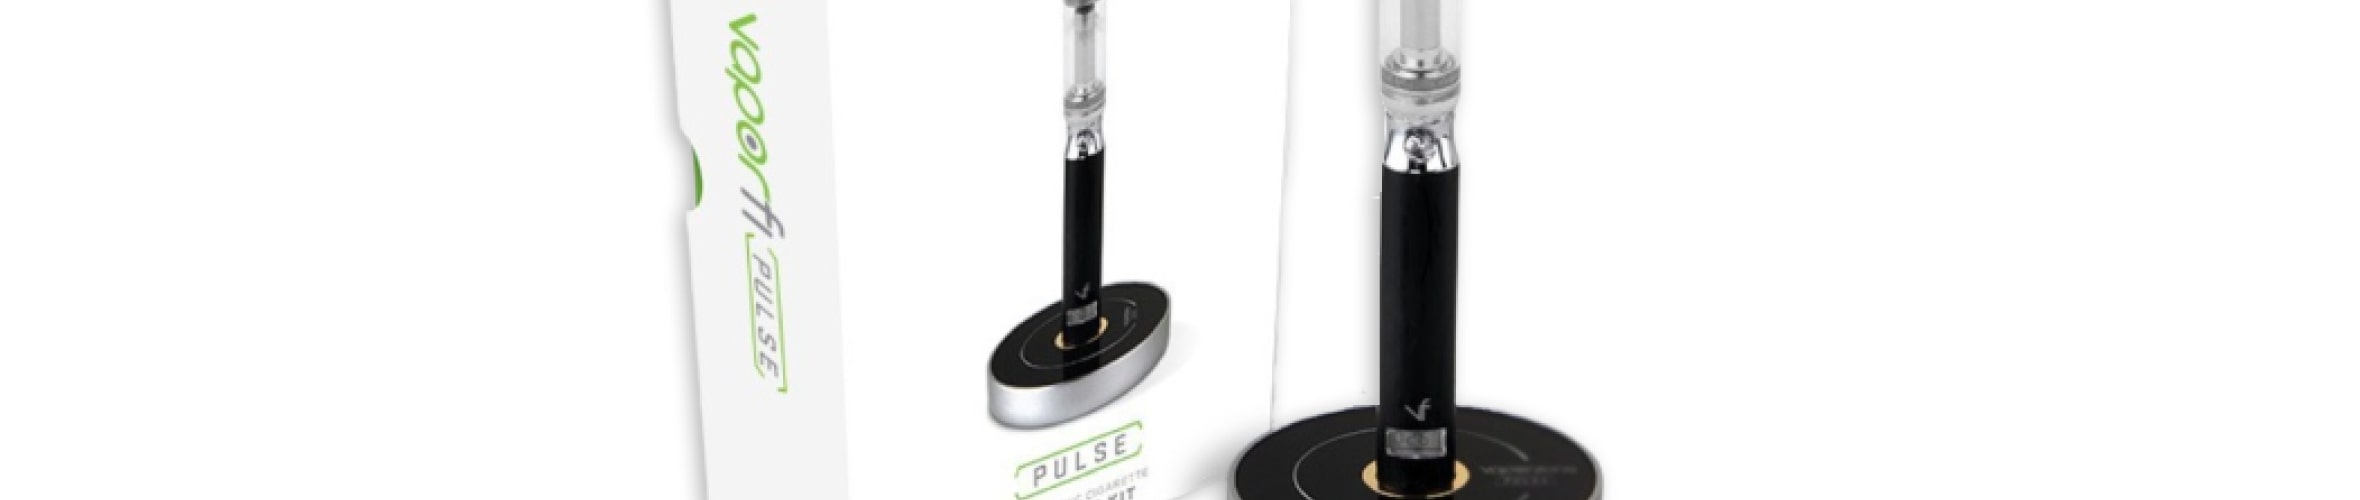 vaporfi pulse starter kit review